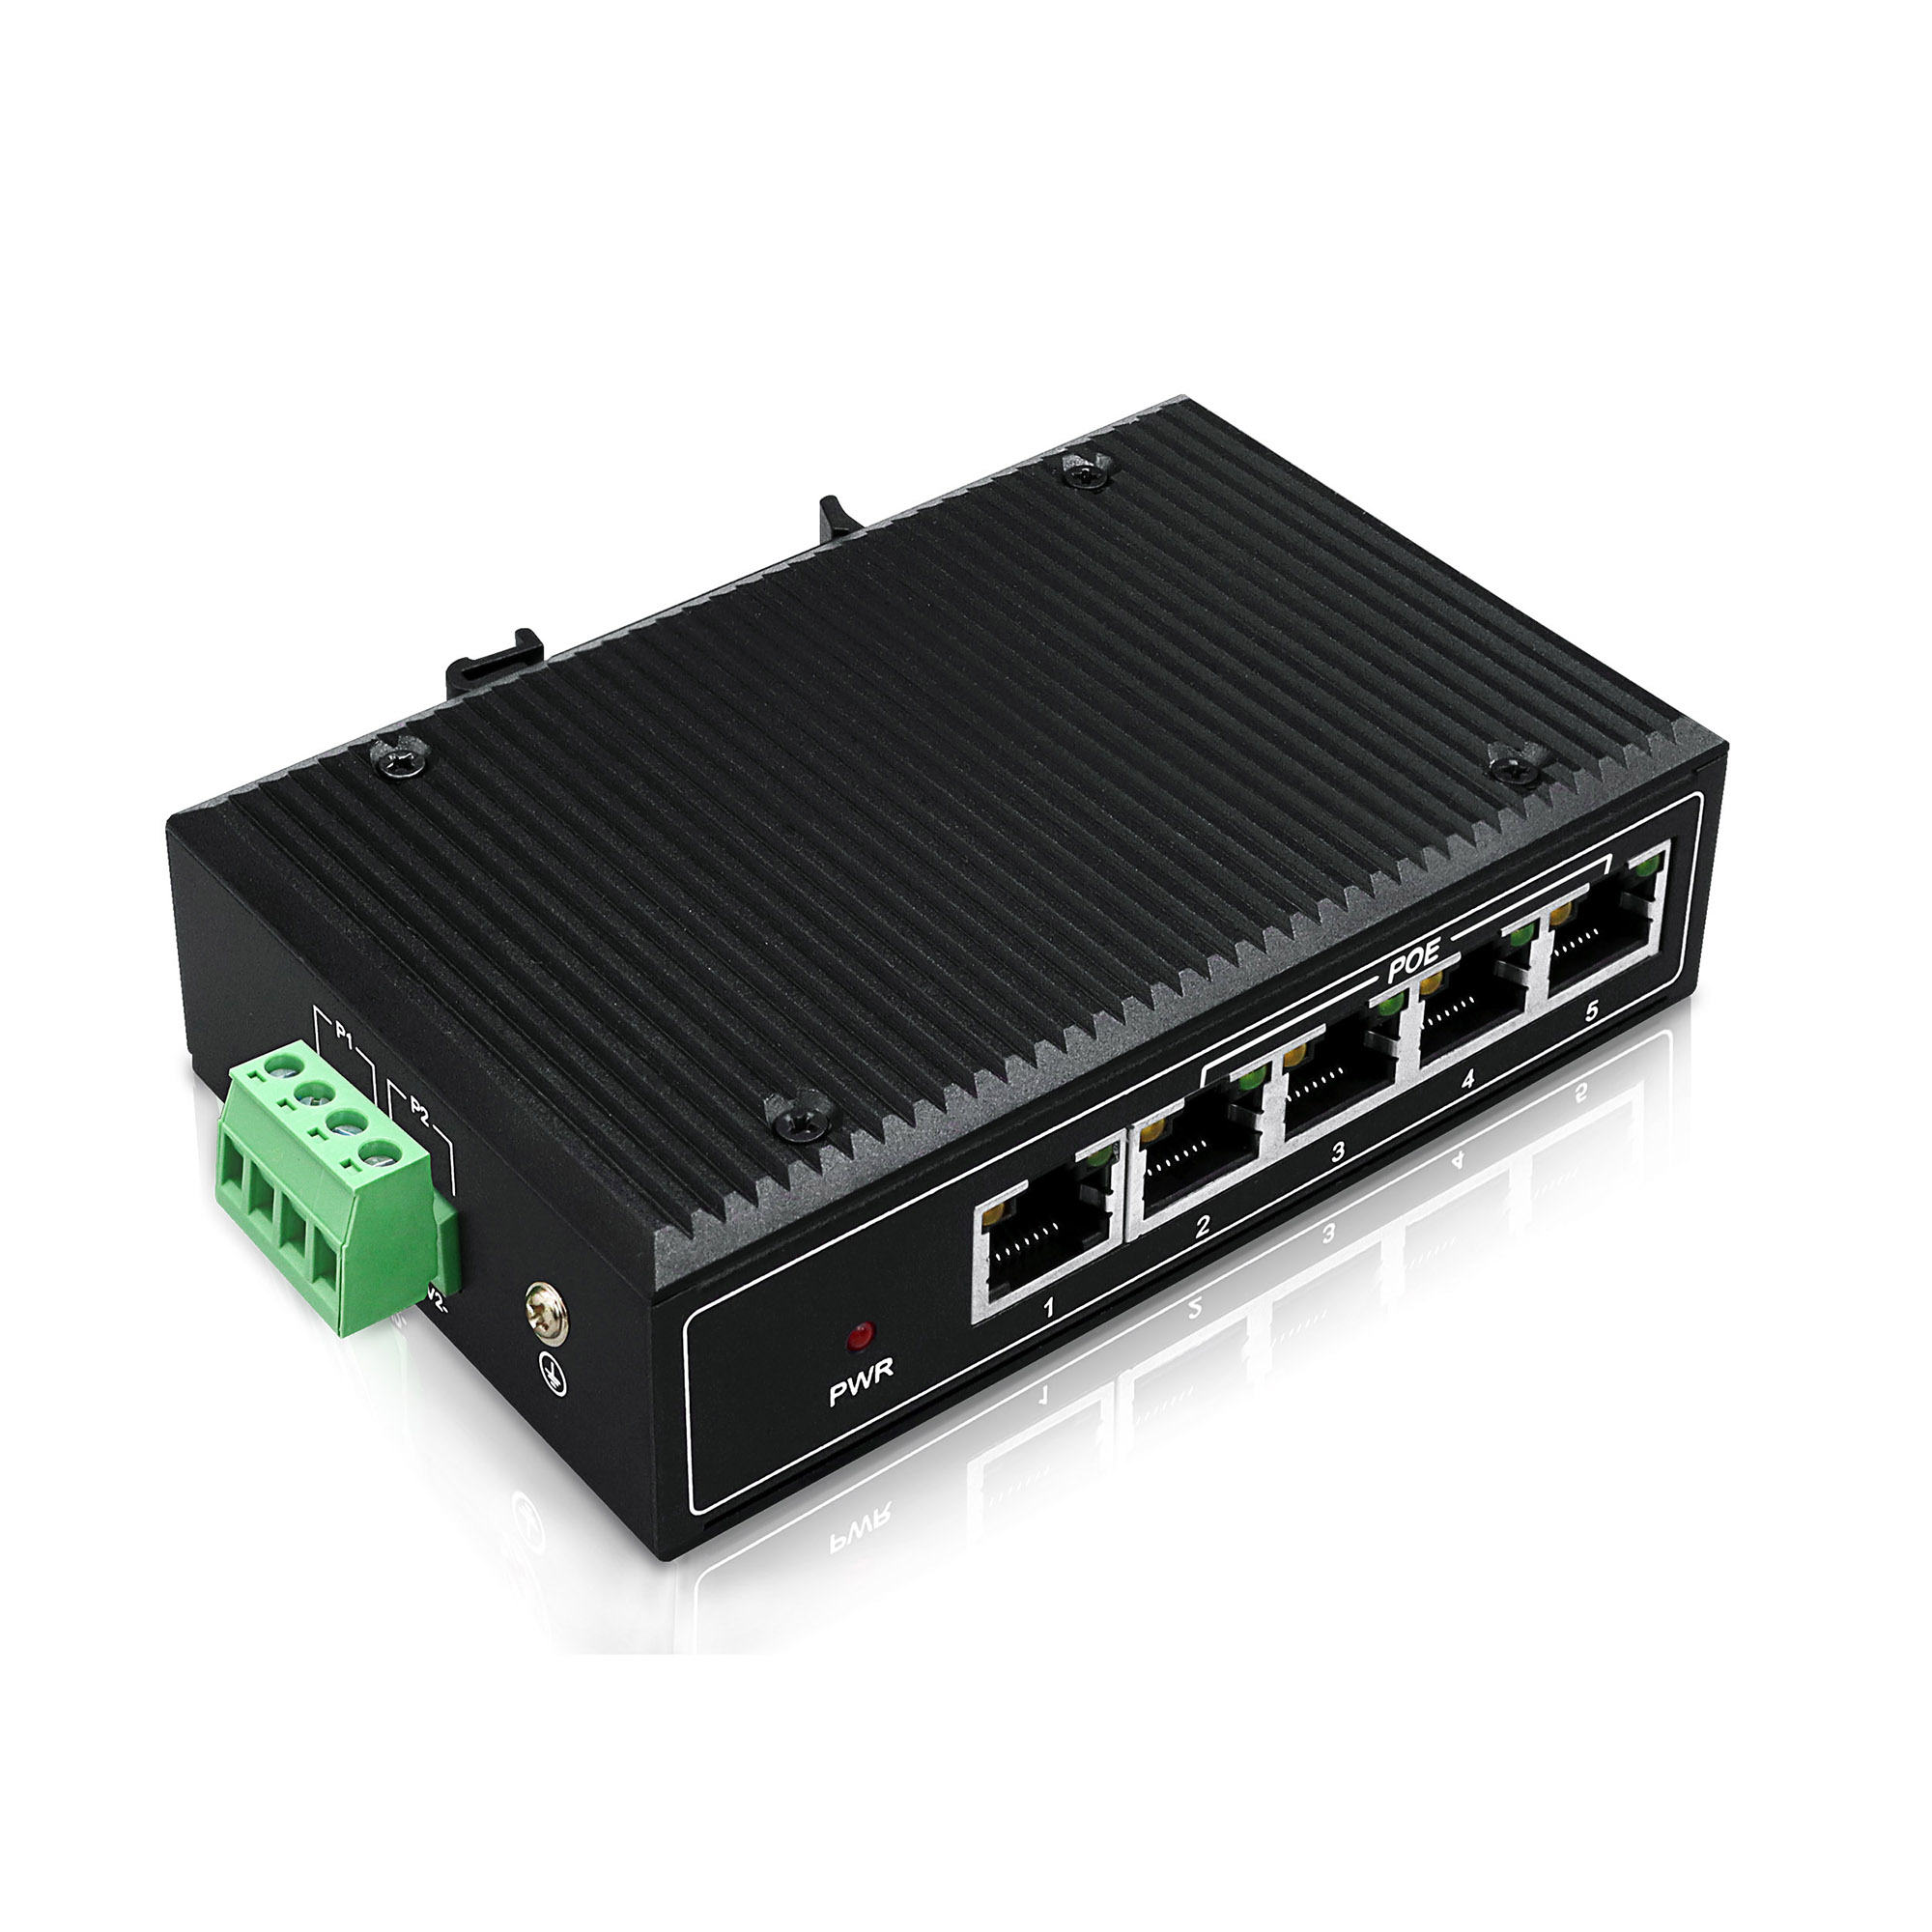 YN-SF105P4 Industrial Ethernet PoE Switch